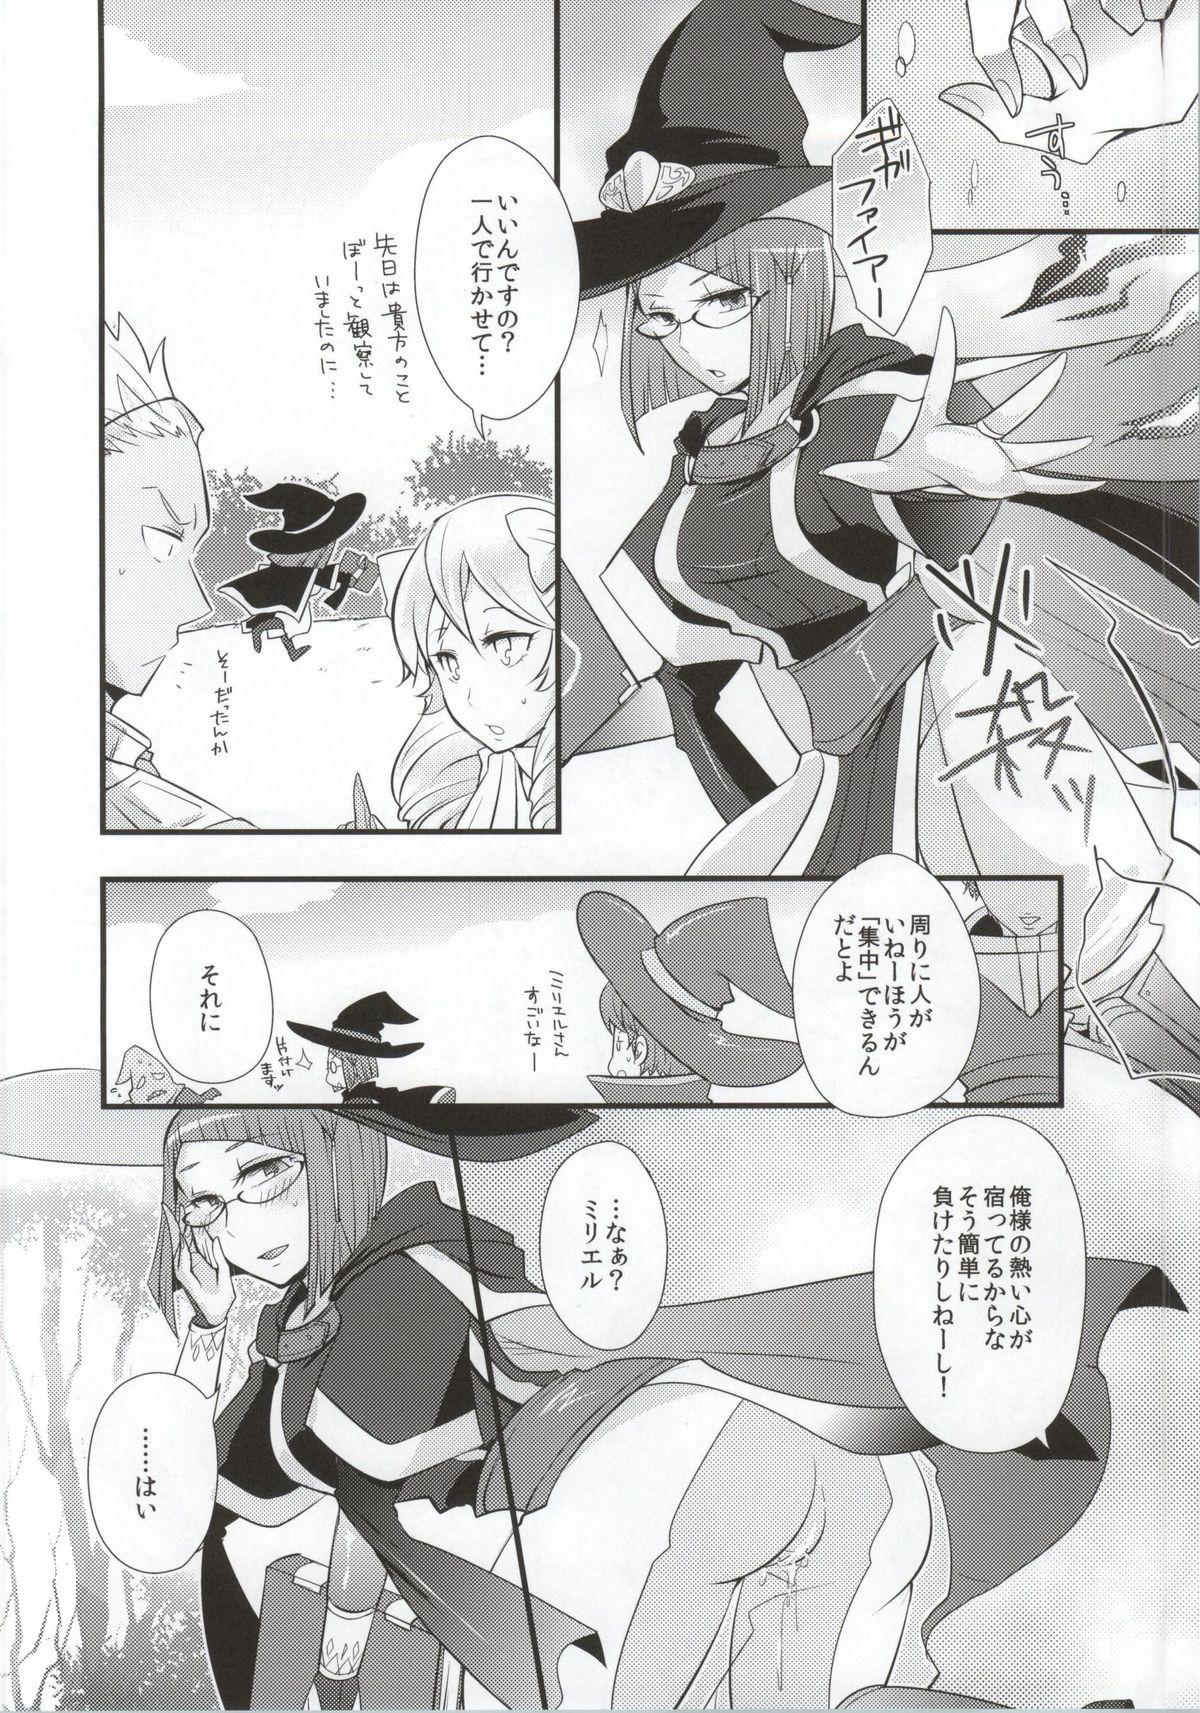 Indo Atsui Kokoro ni Shuuchuu - Fire emblem awakening Forwomen - Page 20